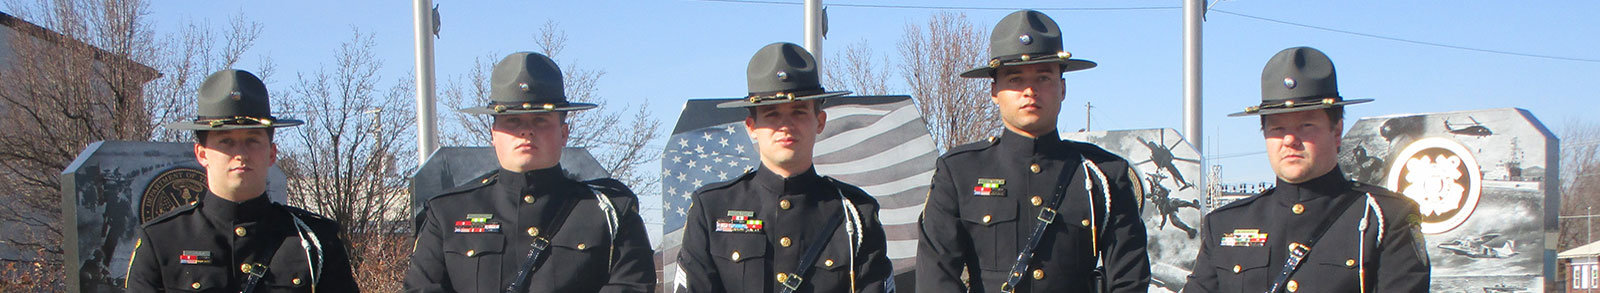 Deputies standing at veteran memorial